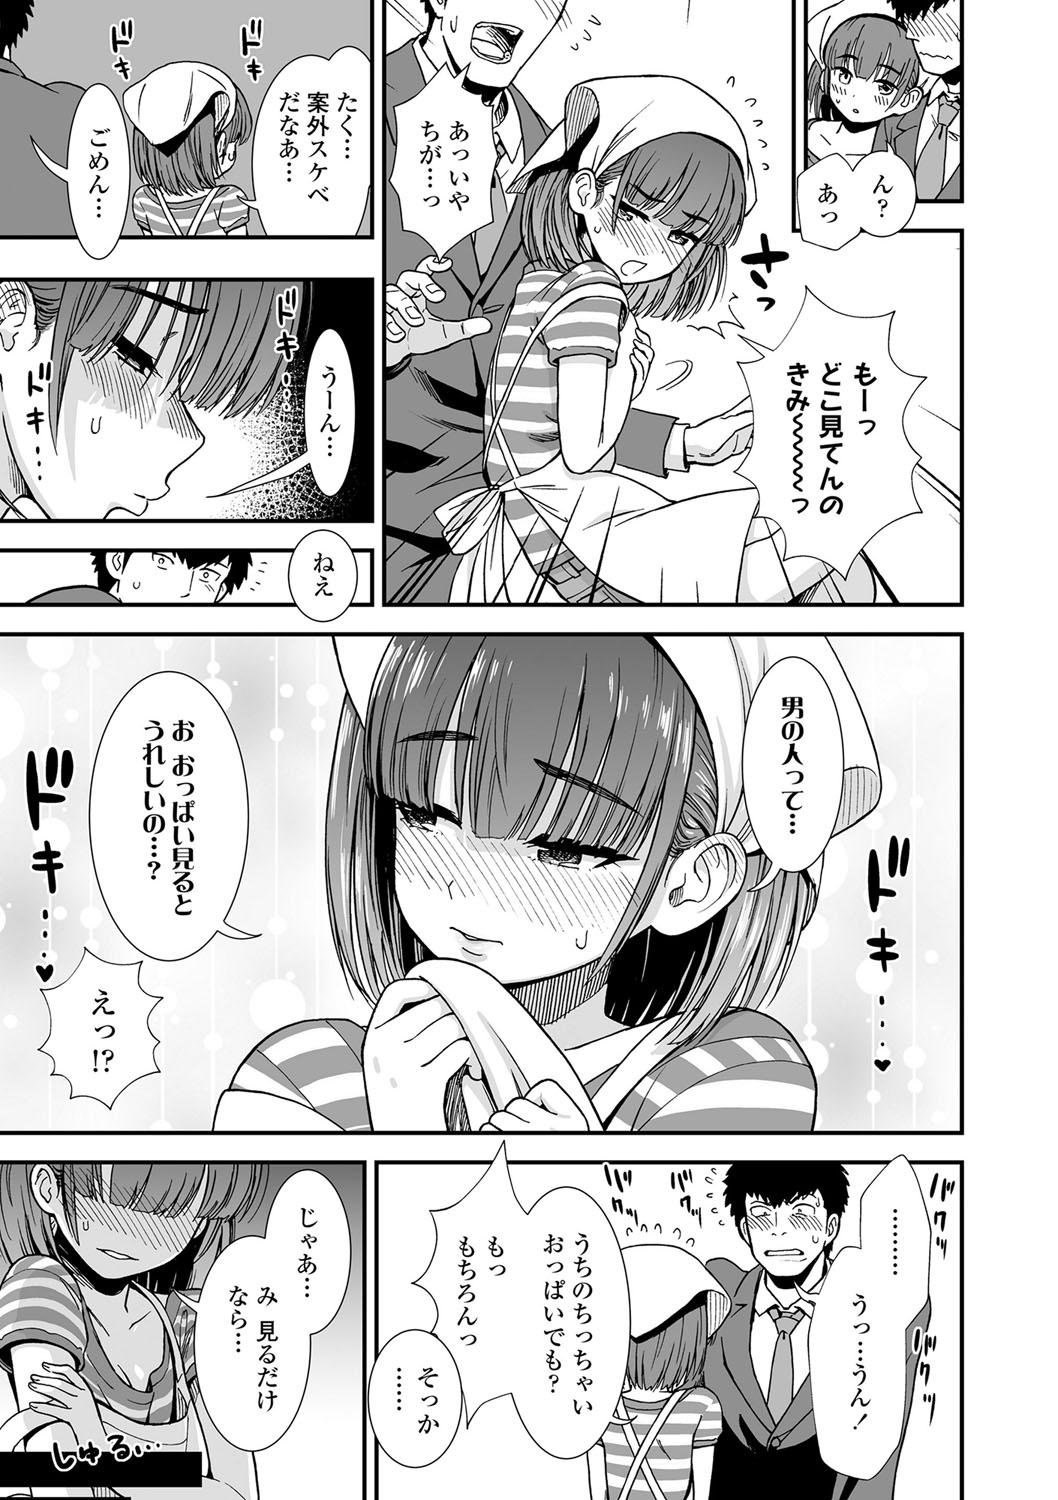 Teenfuns Ore wa Kuzu dakara koso Sukuwareru Kenri ga Aru! Body - Page 10